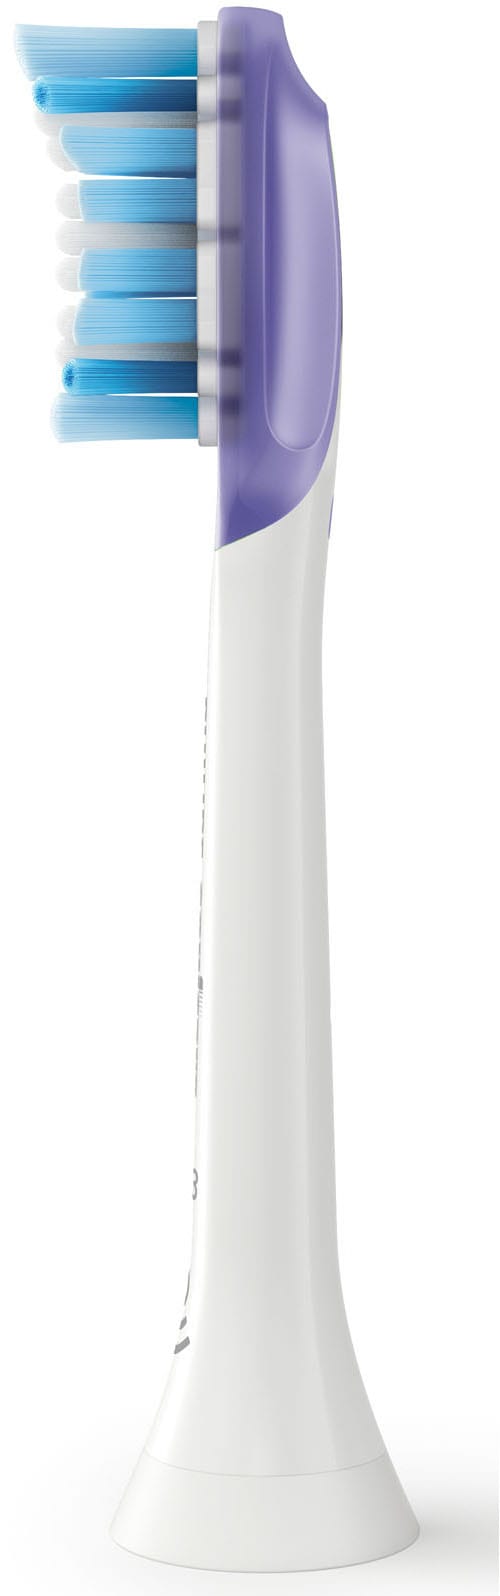 Philips Sonicare Aufsteckbürsten »G3 Premium Gum Care HX9054«, Standardgröße, mit Bürstenkopferkennung